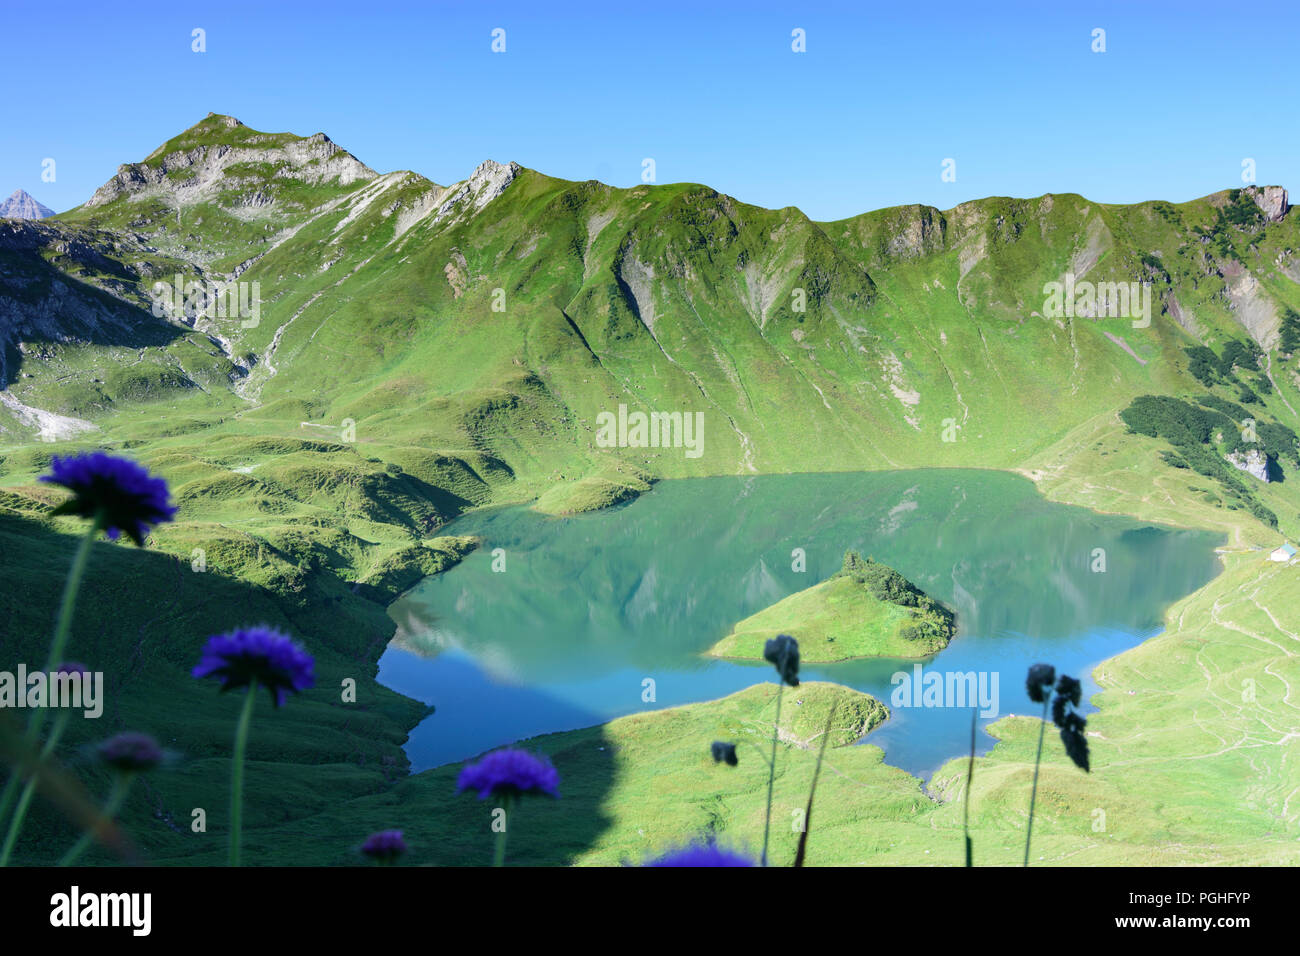 Allgäuer Alpen: lake Schrecksee, flower flowers, alp, Schwaben, Allgäu, Swabia, Bayern, Bavaria, Germany Stock Photo